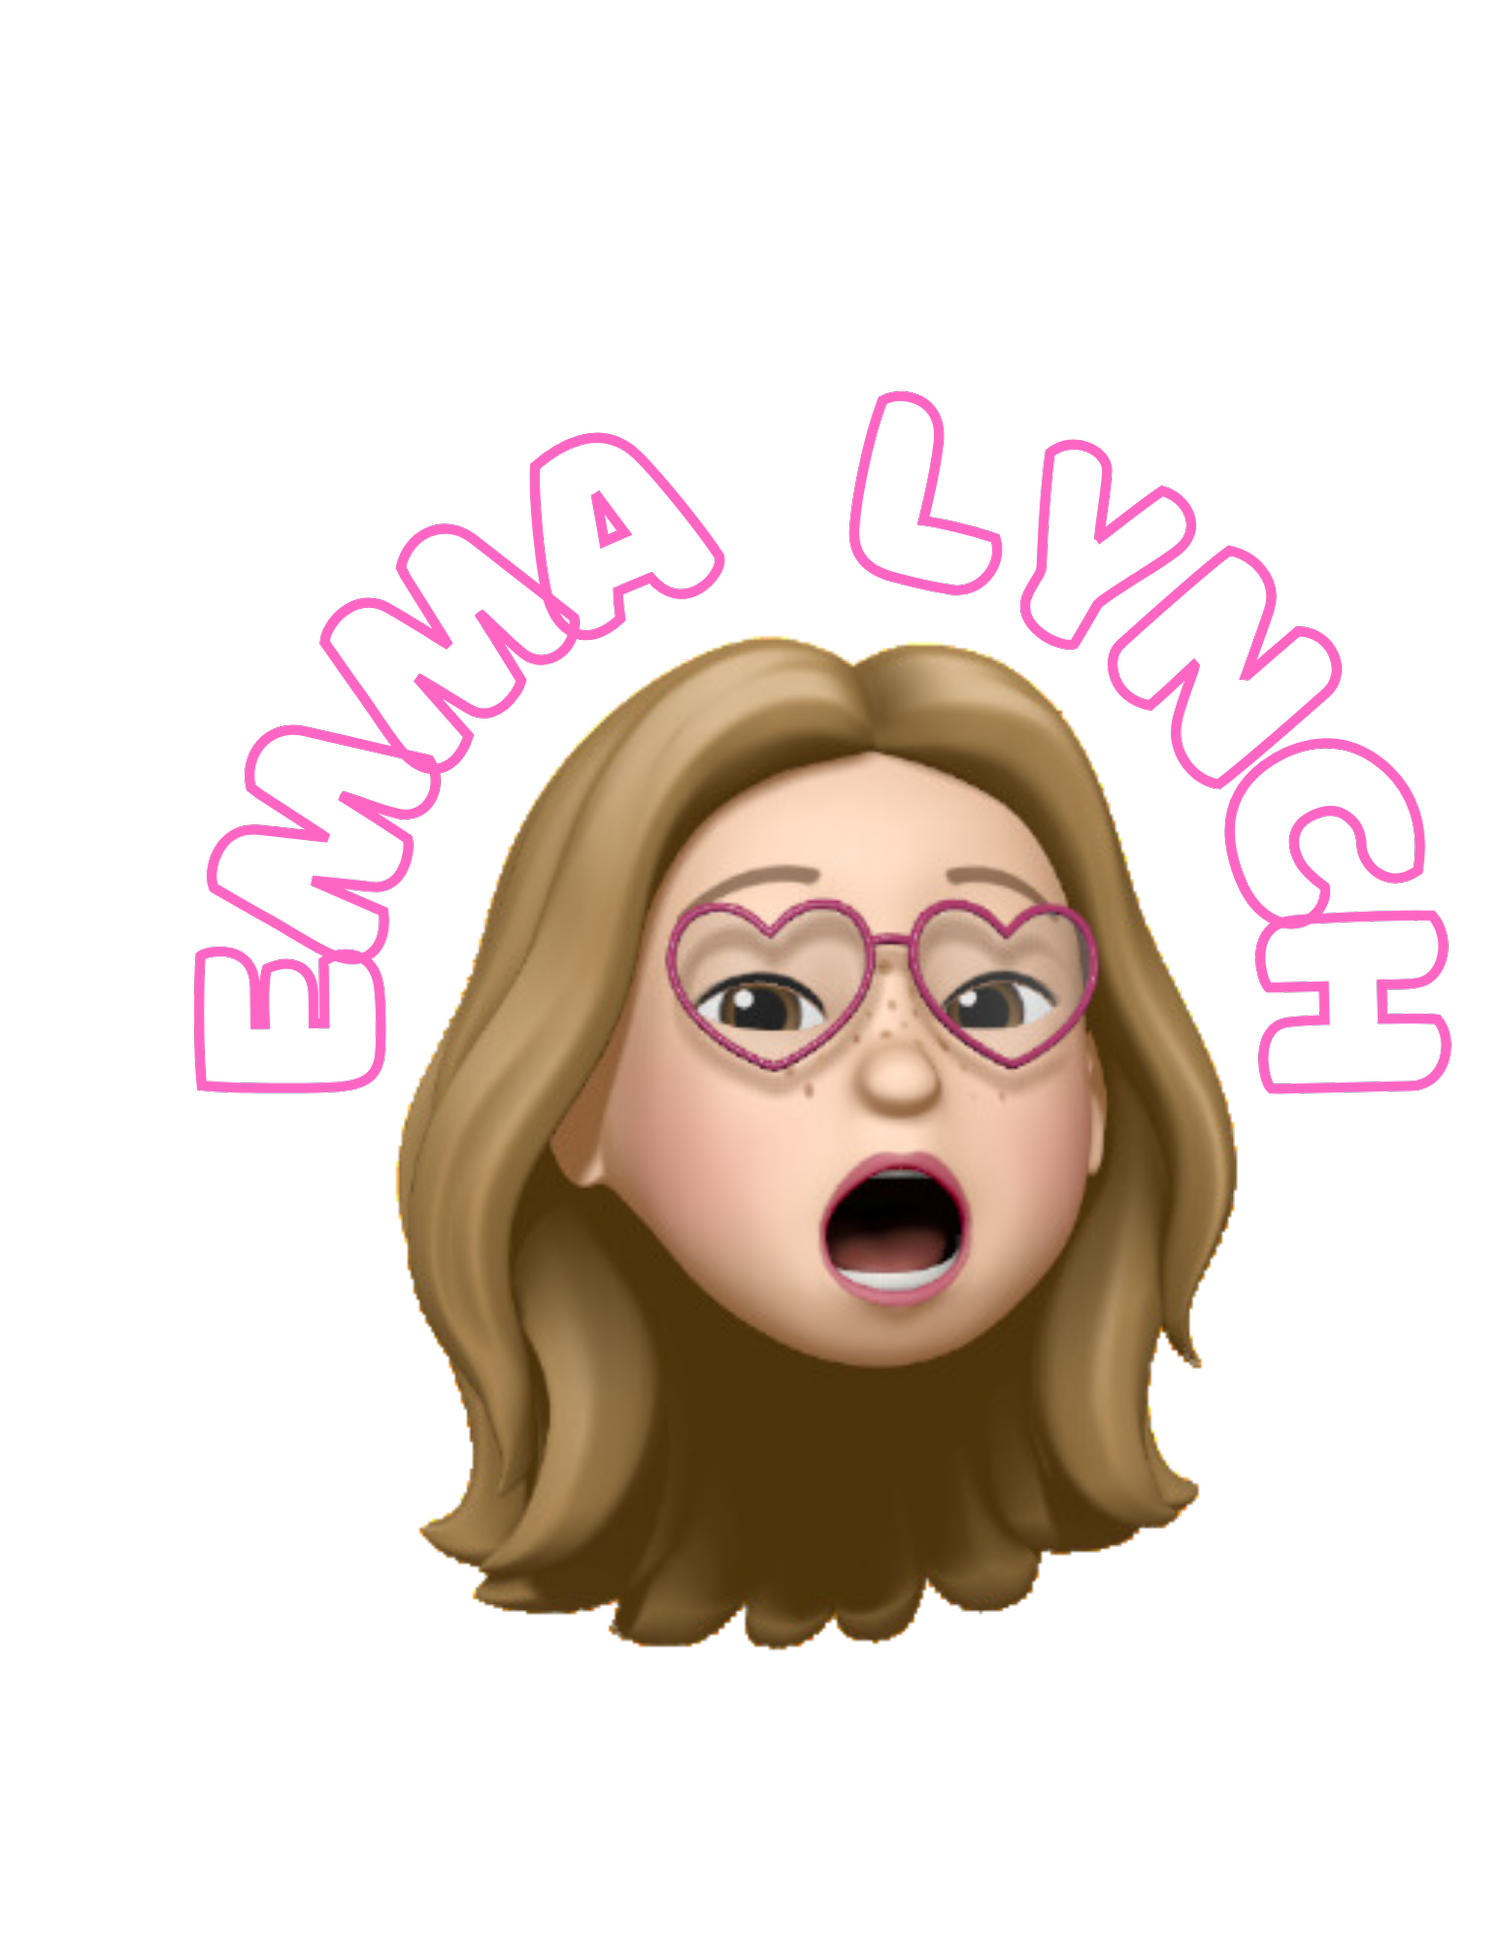 Emma lynch